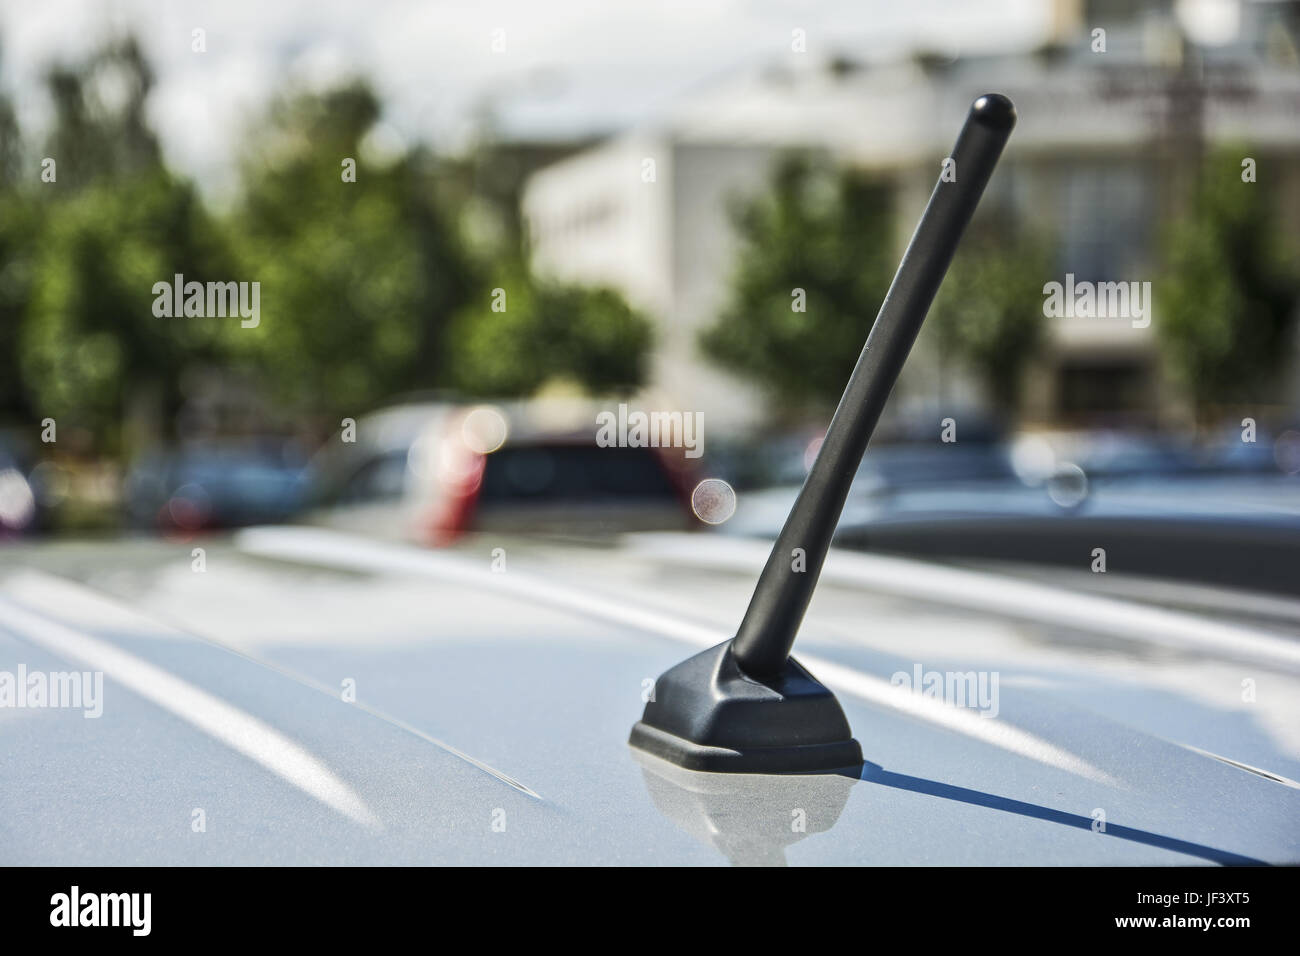 Auto Antenne auf dem Dach Auto Stockfotografie - Alamy